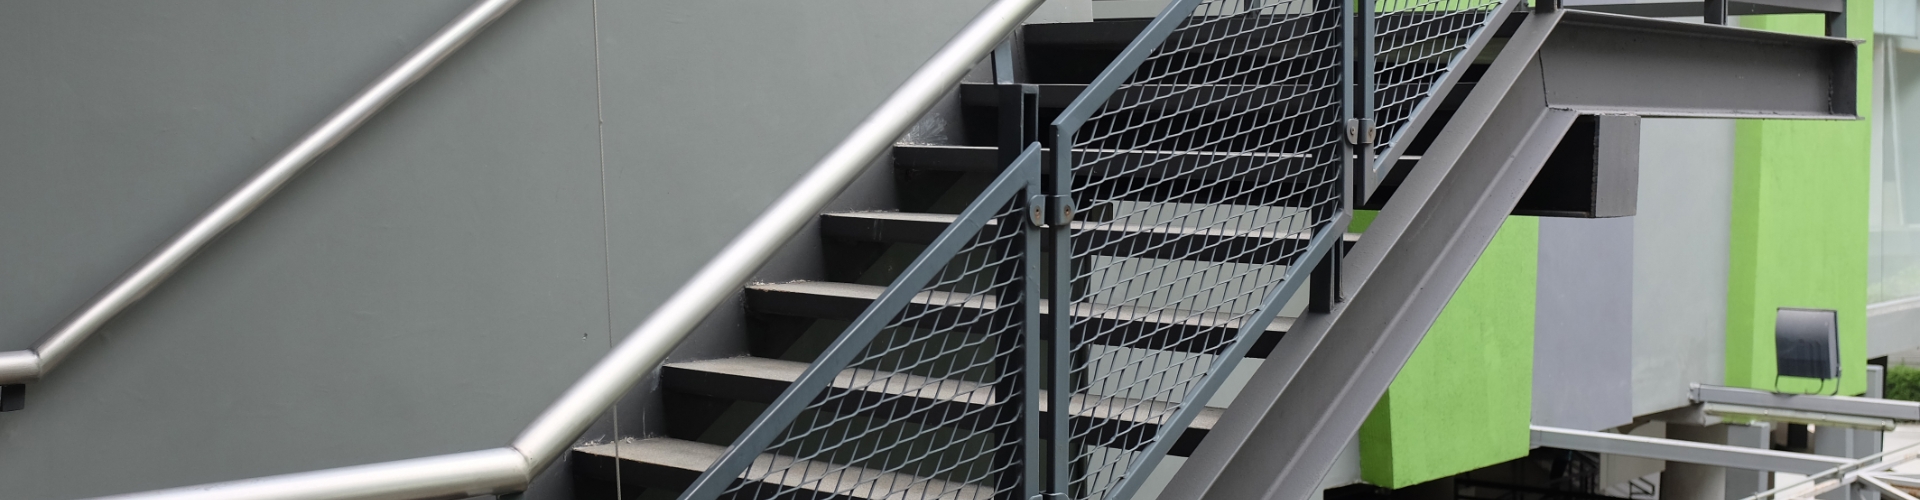 建筑户外楼梯栏杆采用的是钢板网材料的填充板。